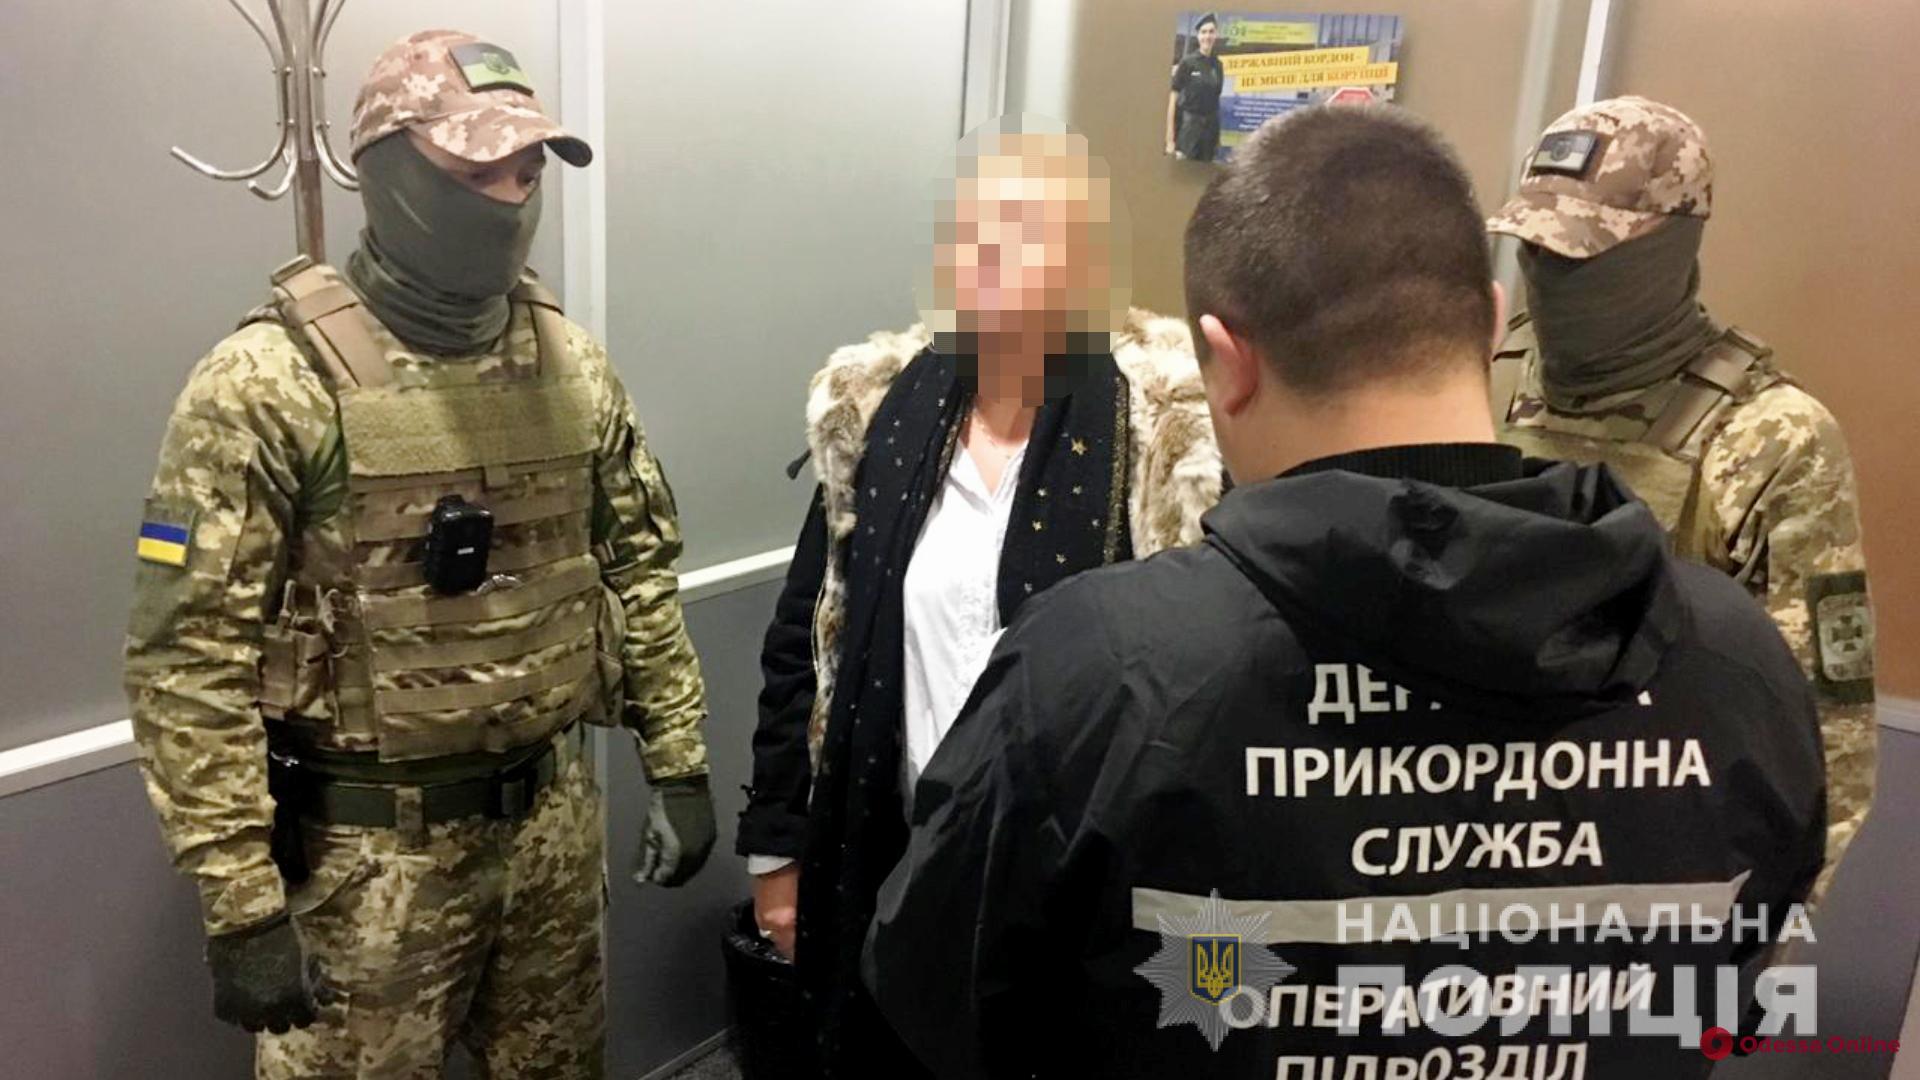 Одесский суд взял под стражу вербовщицу проституток